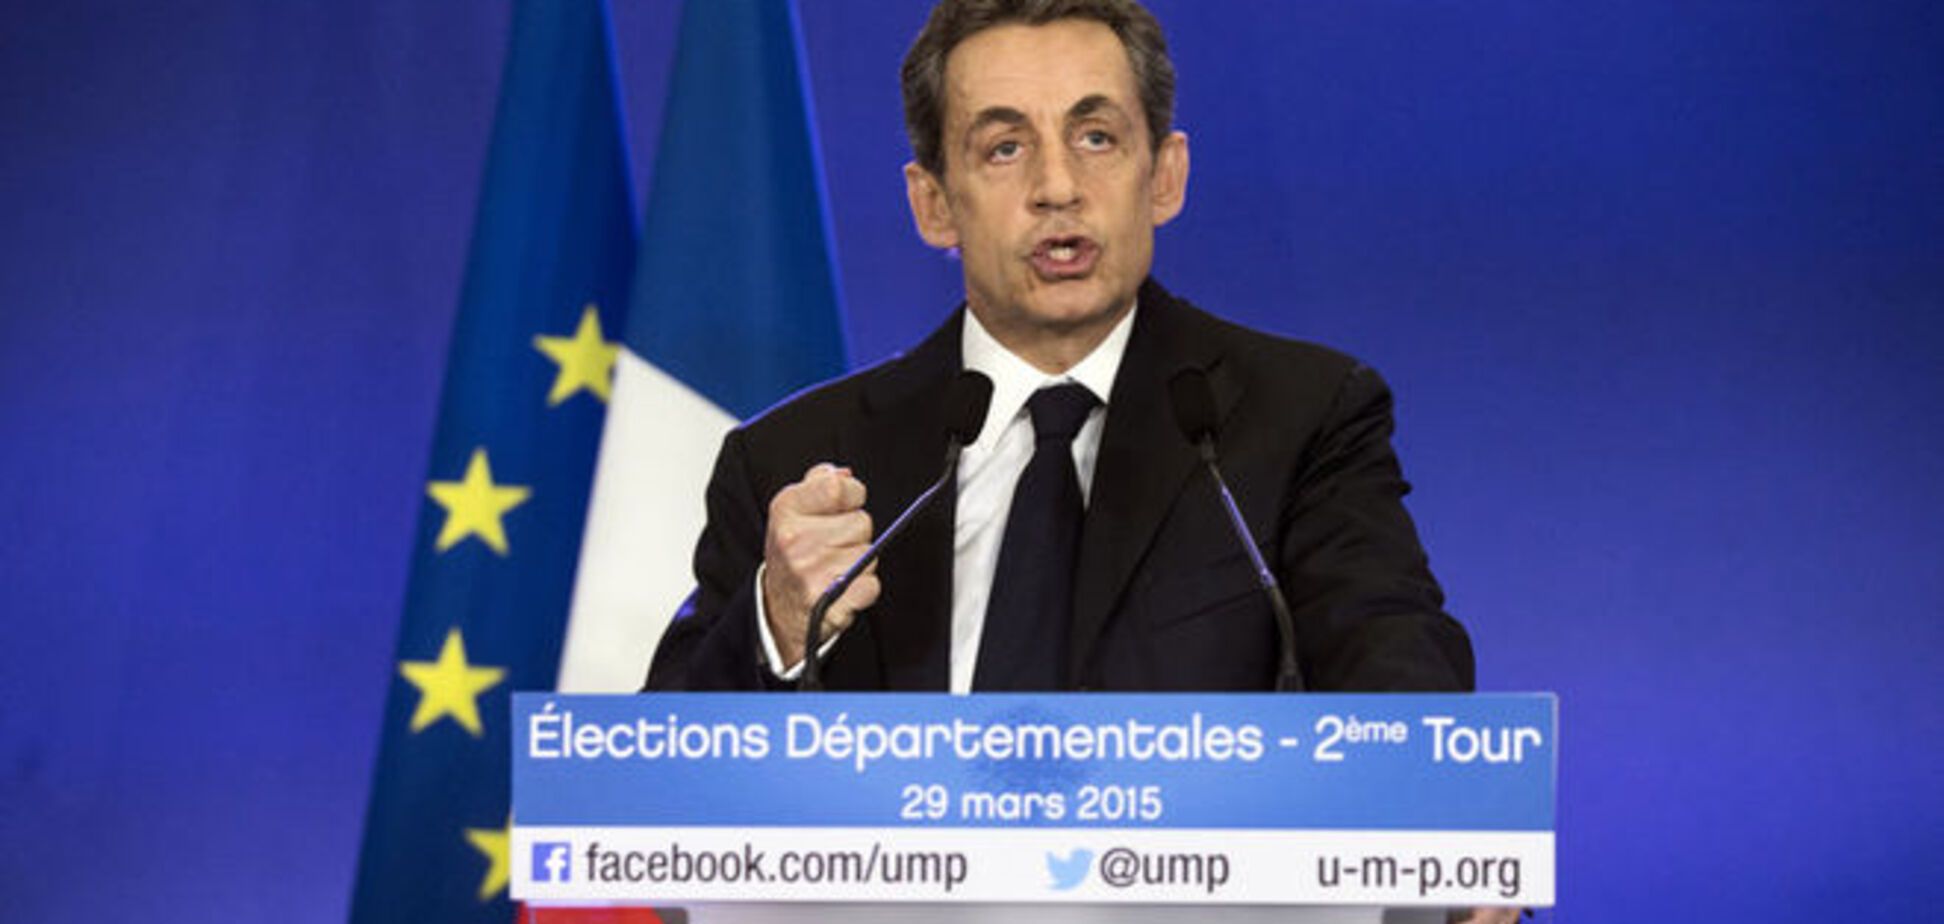 Местные выборы во Франции: триумф Саркози и поражение социалистов